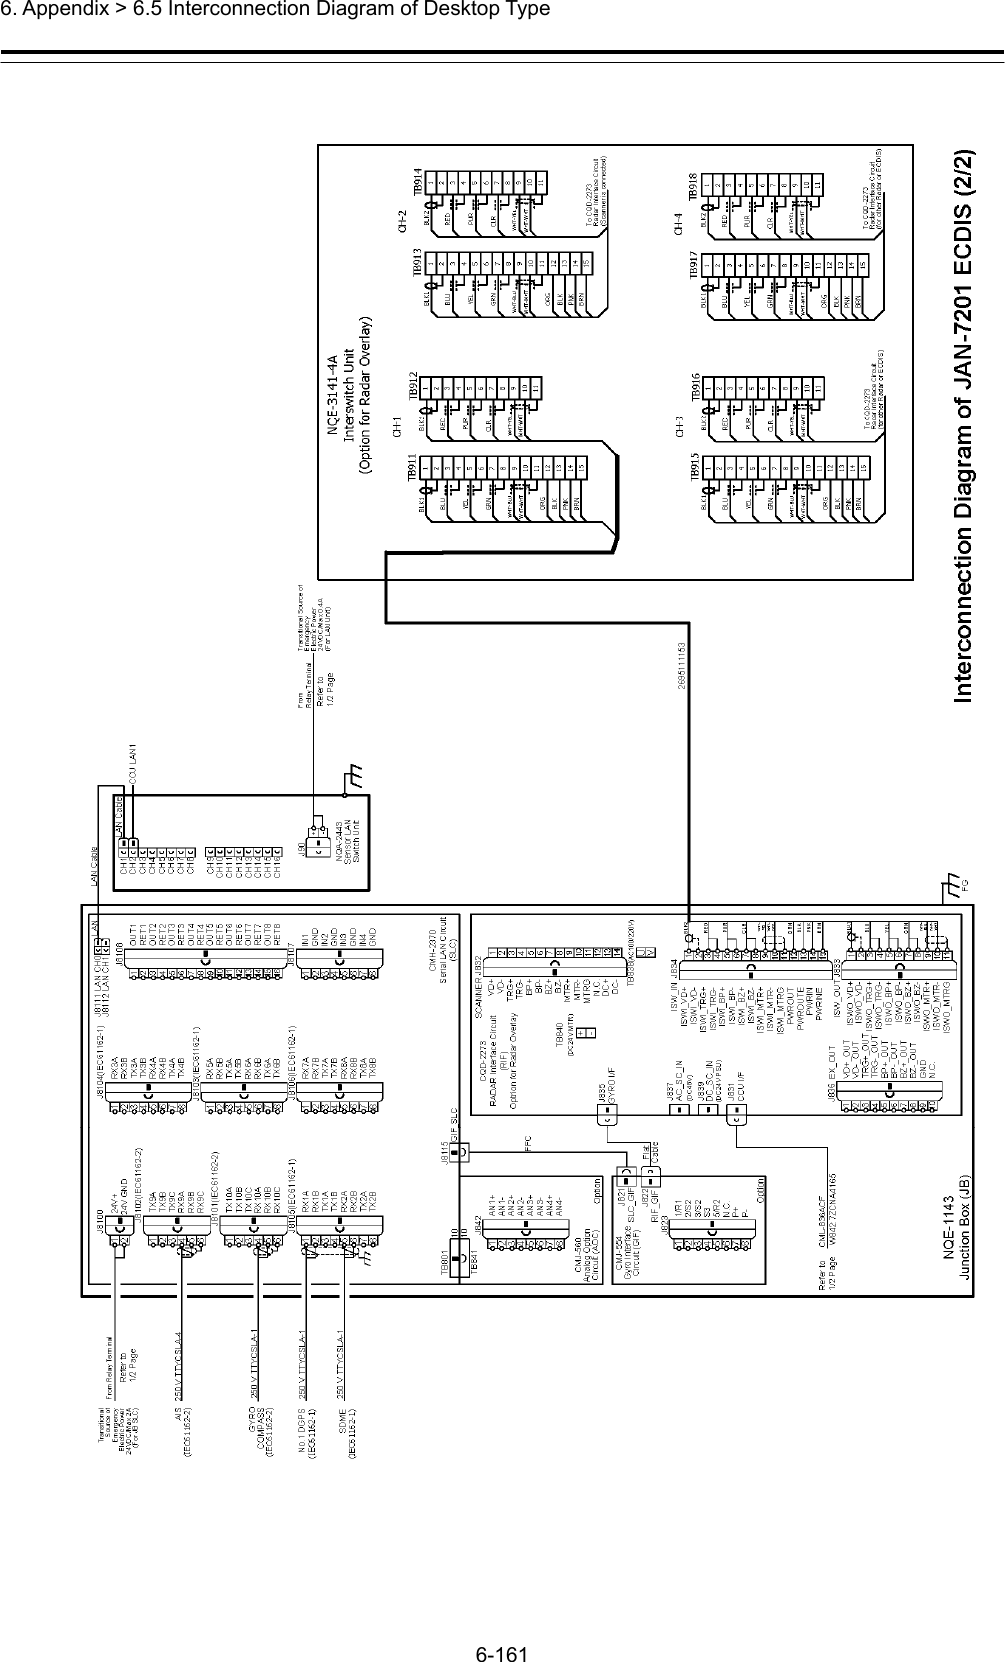  6. Appendix &gt; 6.5 Interconnection Diagram of Desktop Type 6-161 